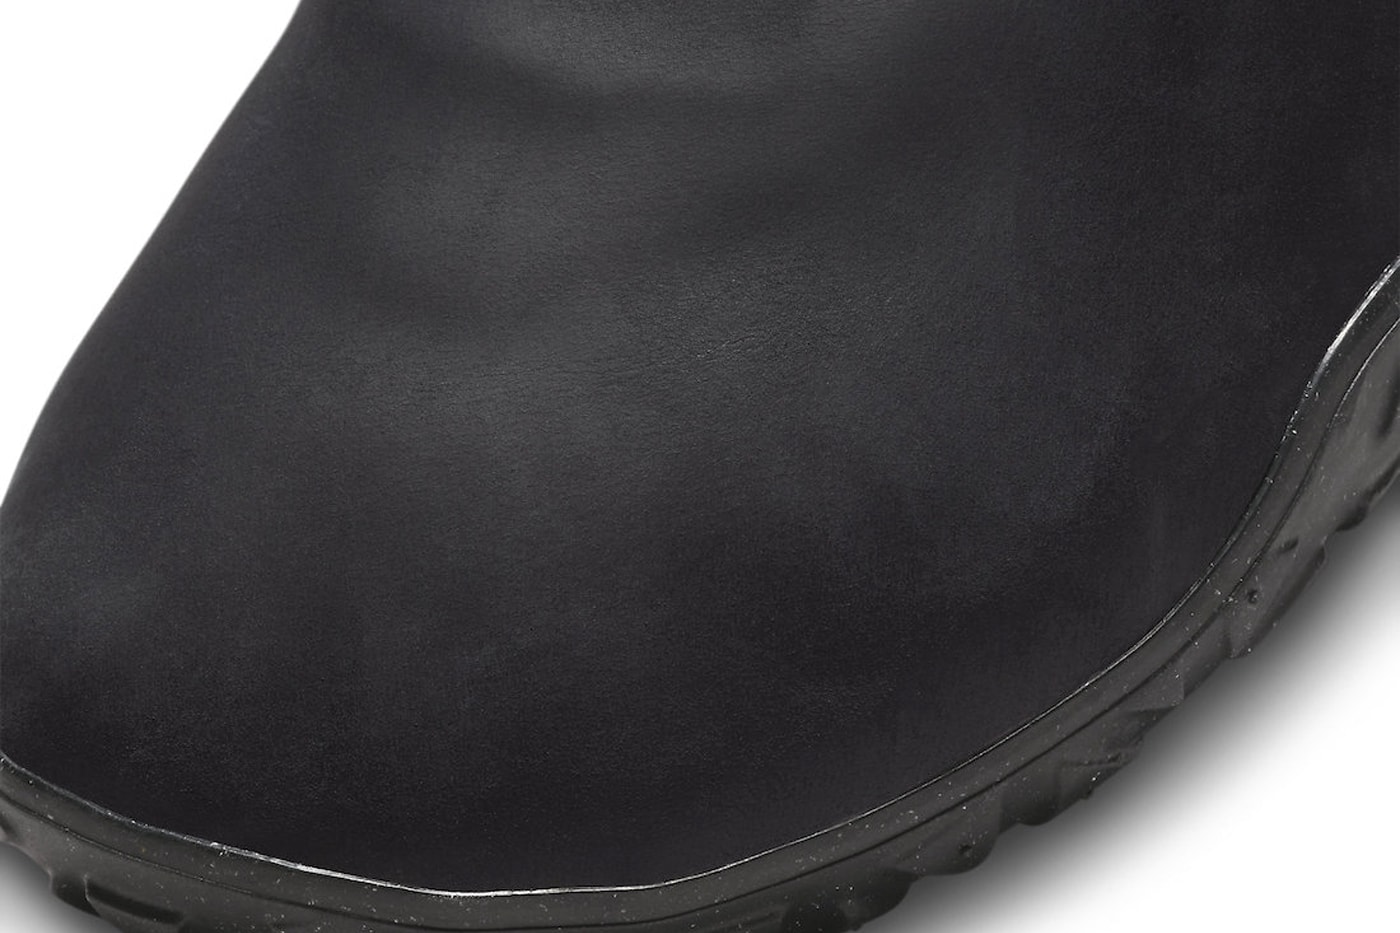 ナイキACGからオールブラック仕様の新作エアモックが登場 Nike ACG Air Moc Receives a "Black Leather" Treatment FV4569-001 Black/Black-Black-Black-Summit White